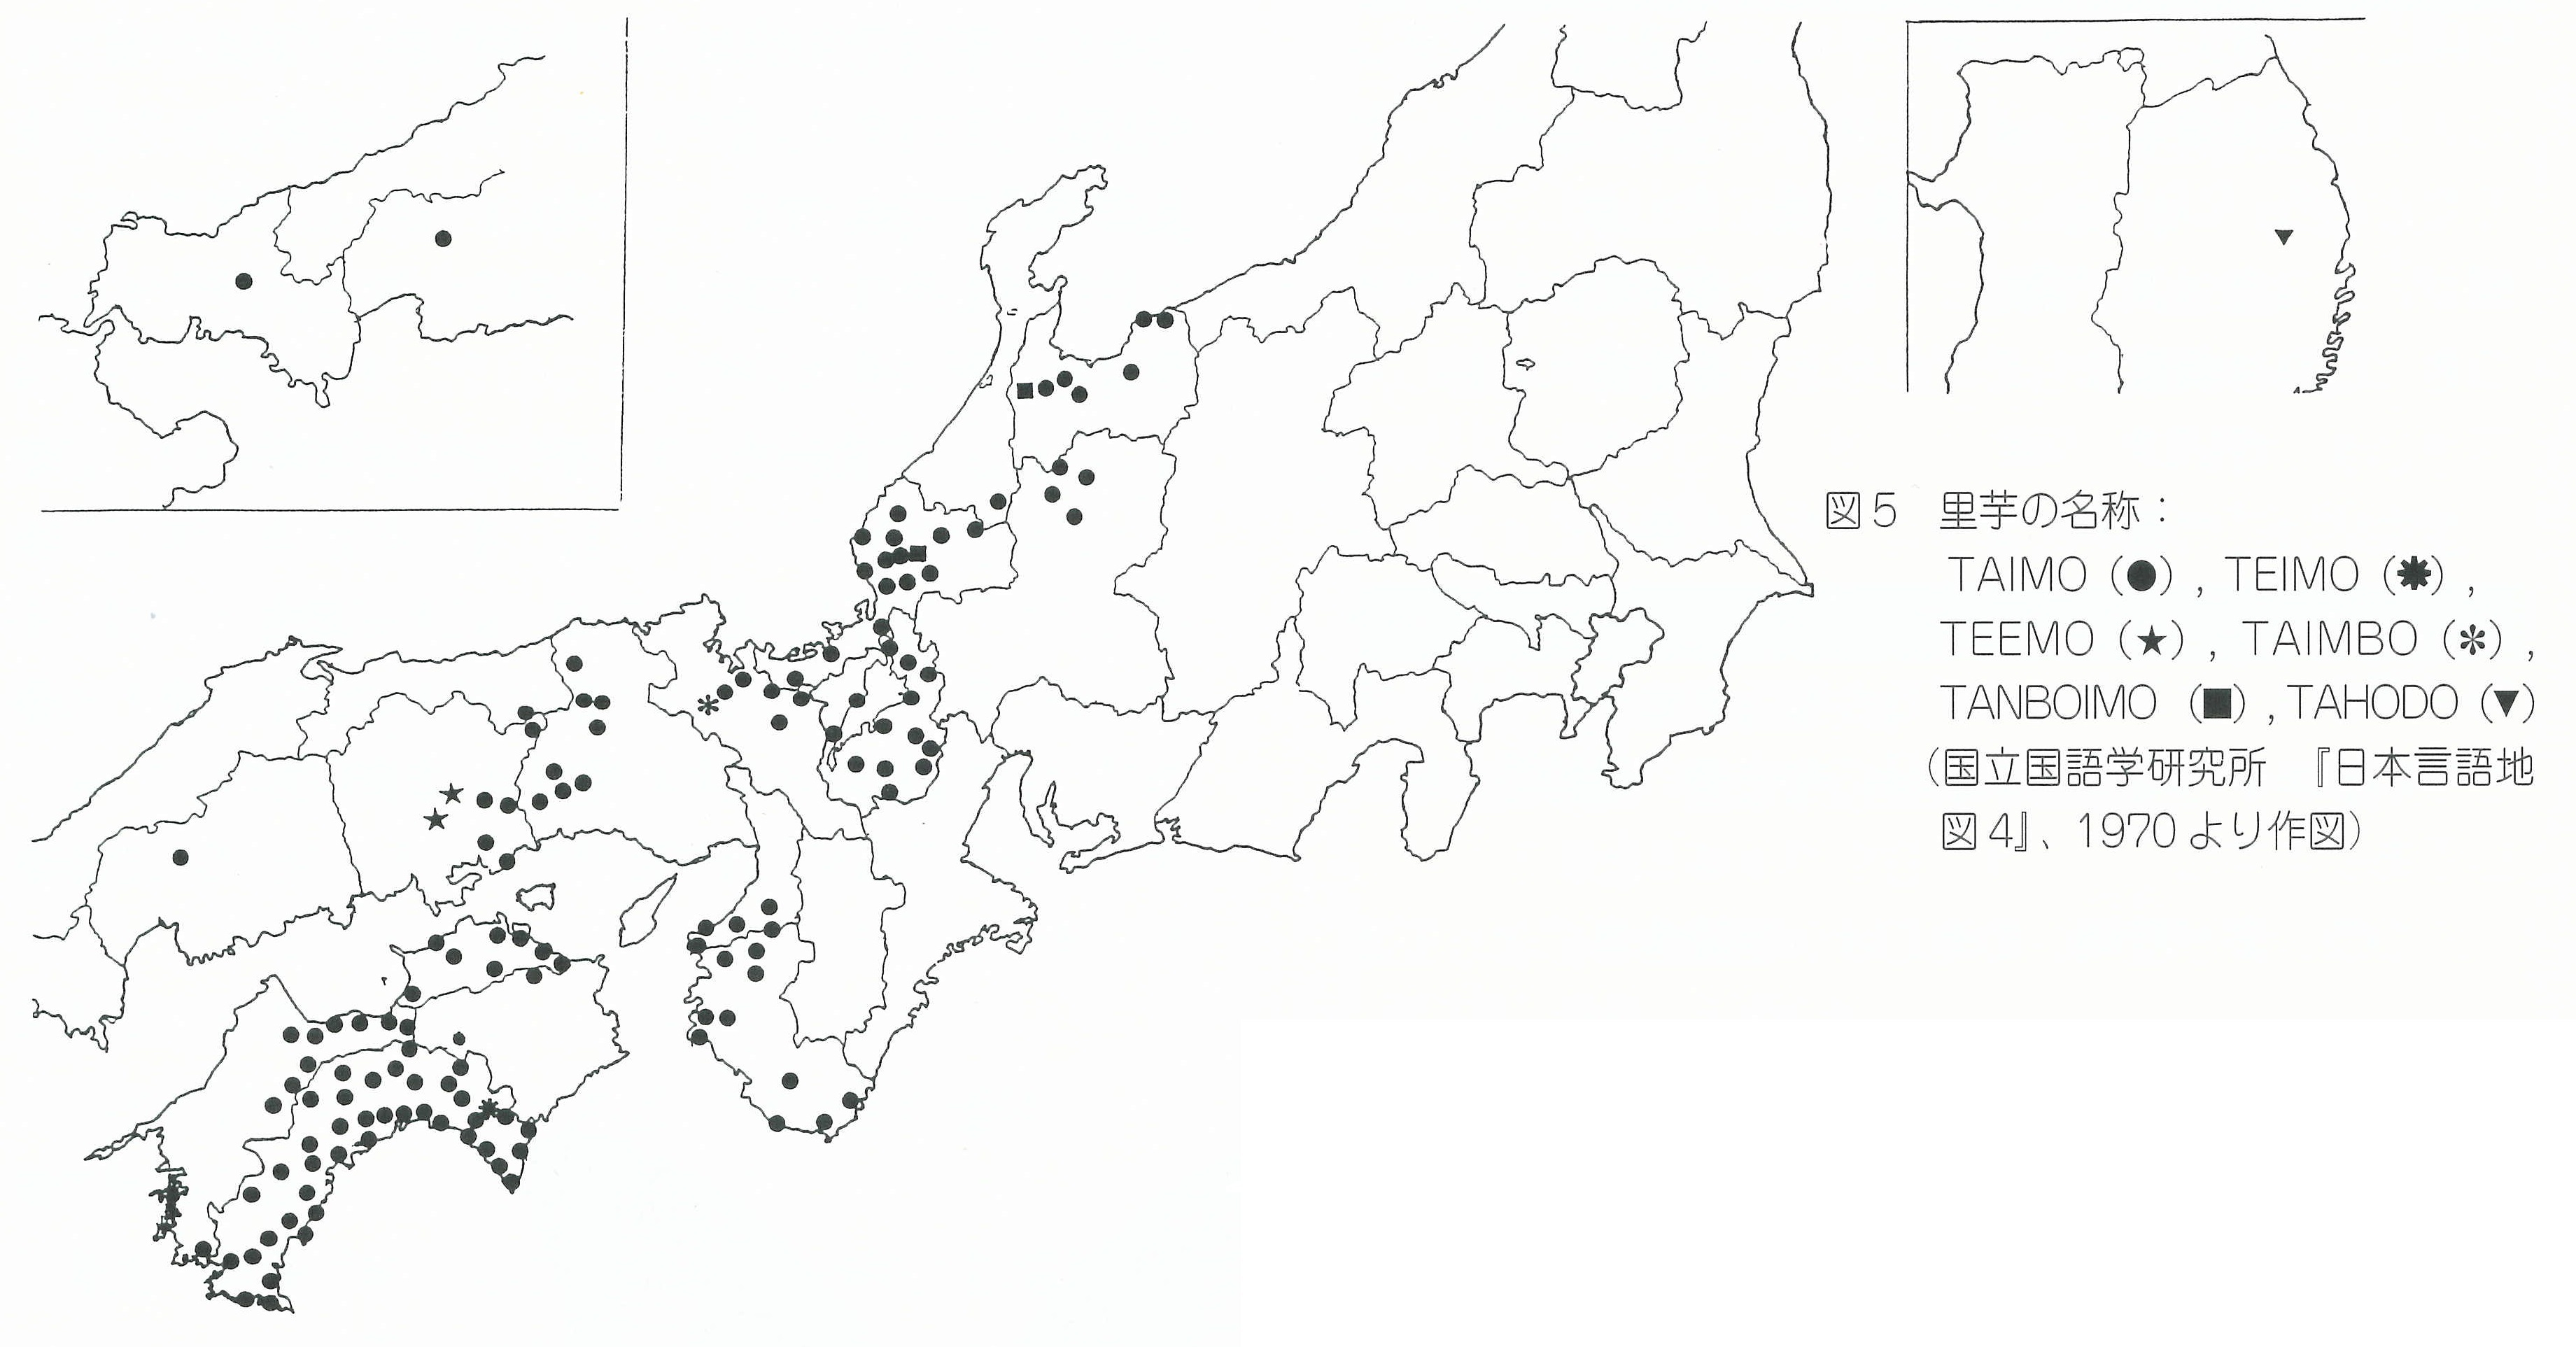 図5 里芋の名称を新たした地図 TAIMO （●），丁目MO（帯）， TEEMO (*), TAIMBO (•I•), TANBαMO （国）,T AHCC8 (T) （園立国語学研究所f日本言語地 図4J、19'70より作図）